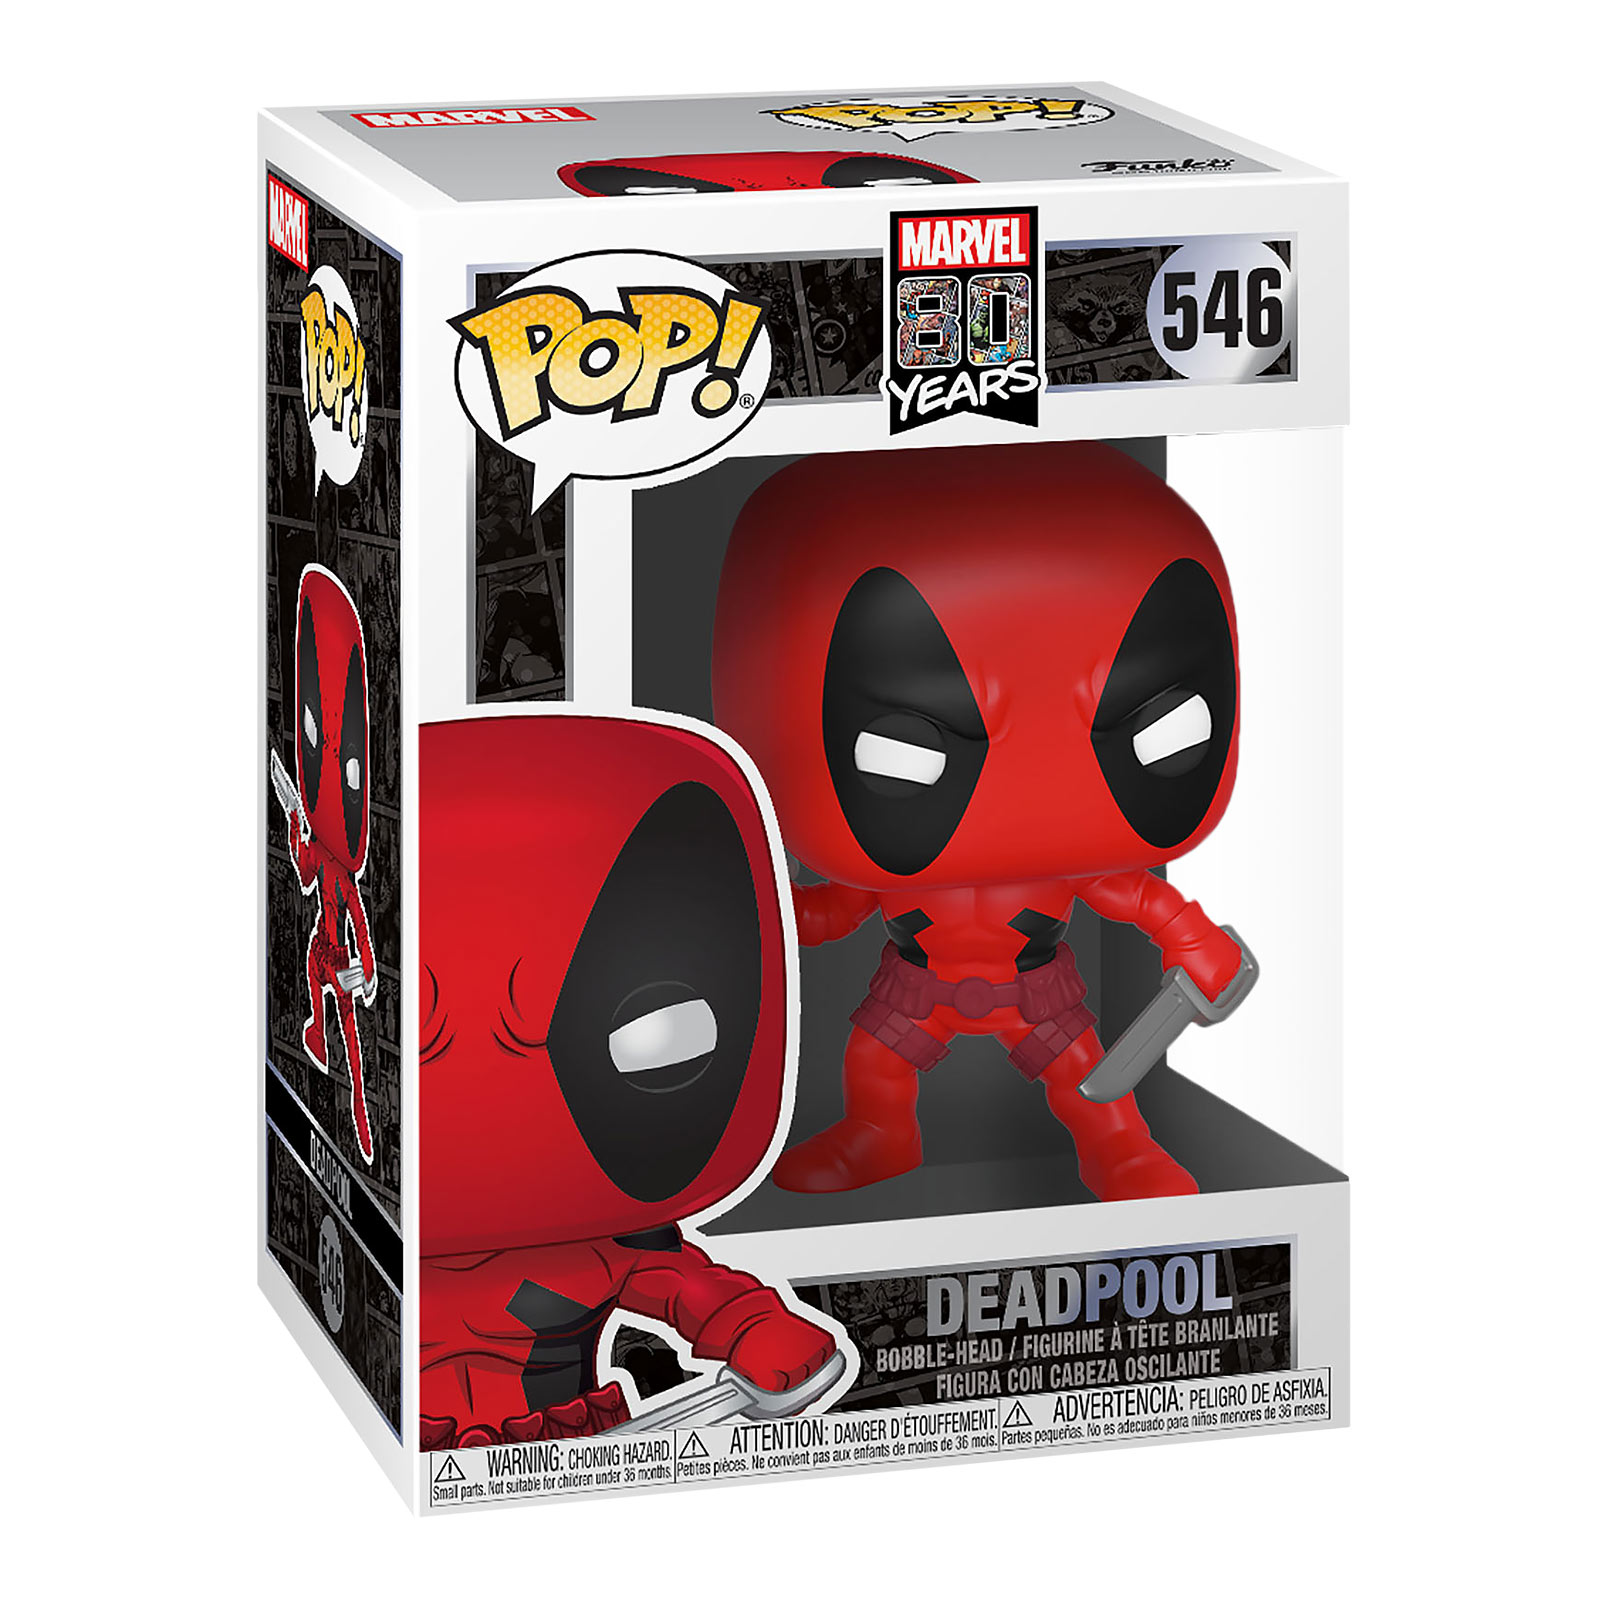 Deadpool - Marvel 80 Years Funko Pop Bobblehead Figure